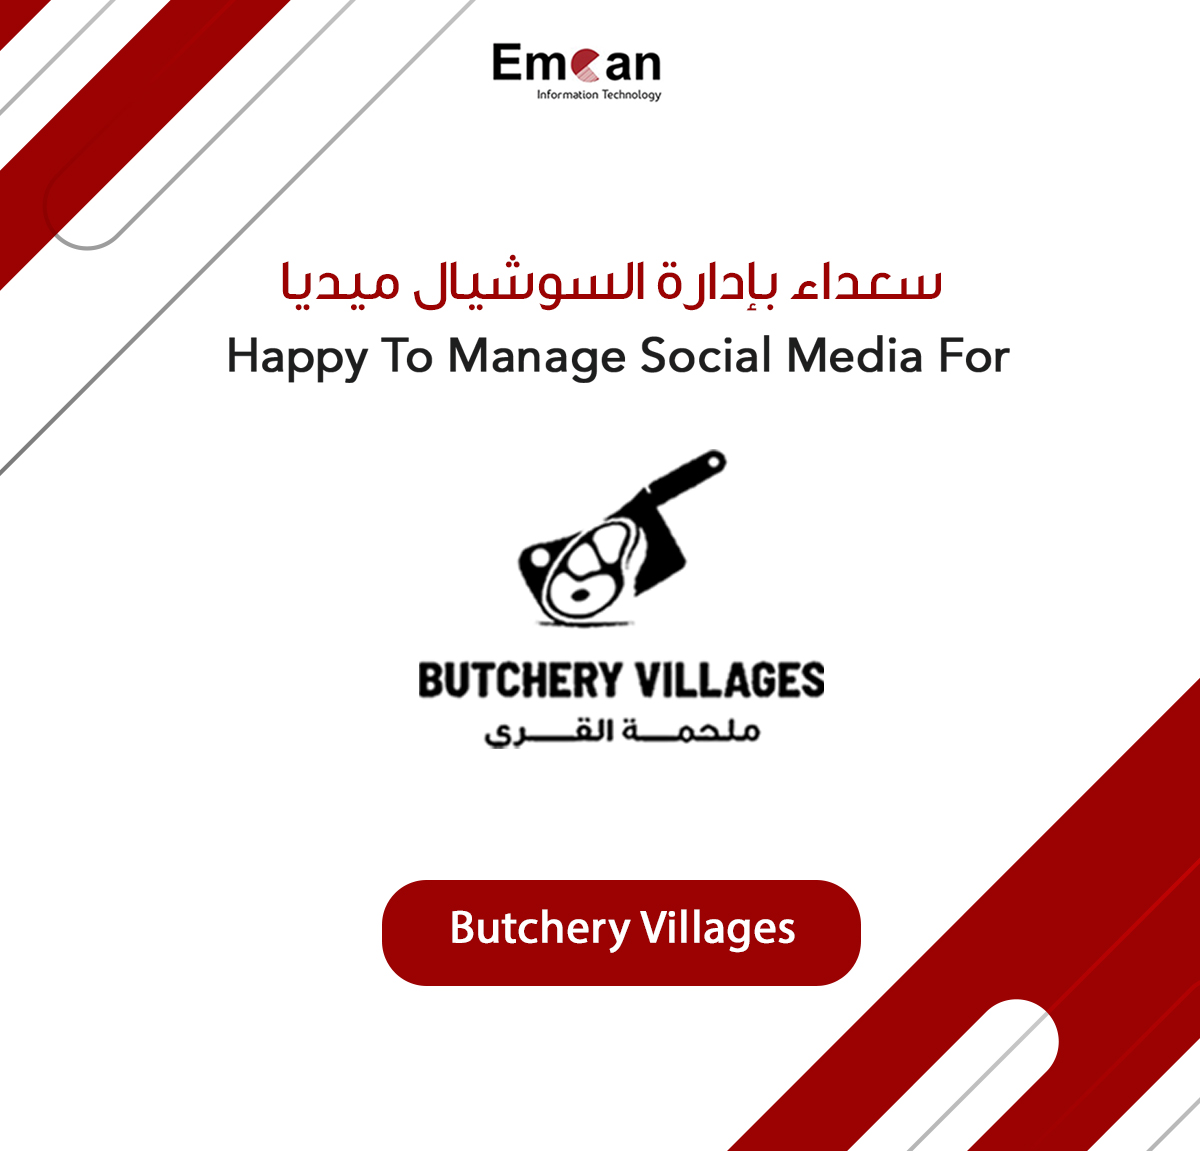 Social Media Management For Butchery Villages